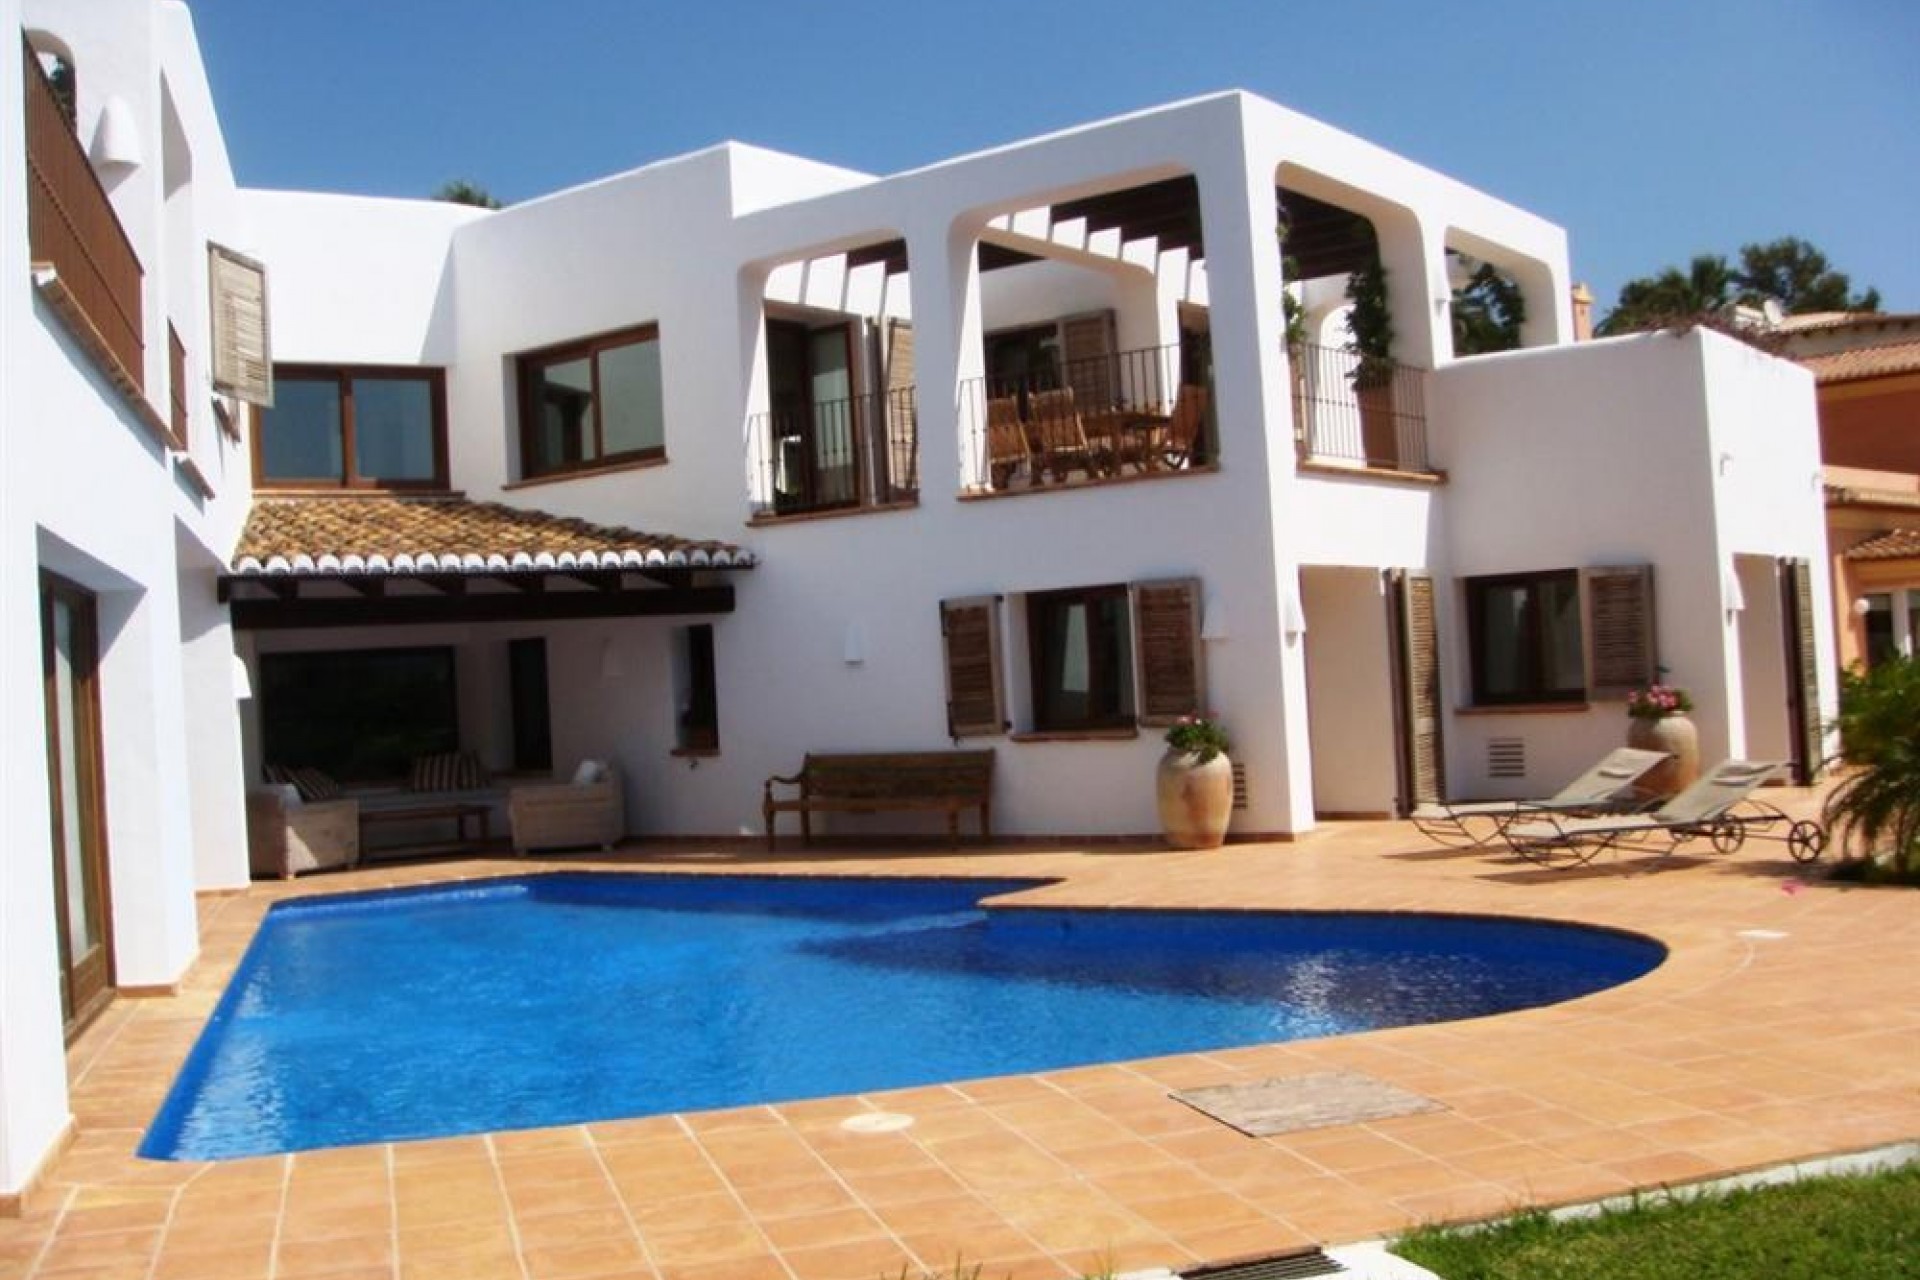 Luxe, Villa de style Ibiza à vendre à Moraira